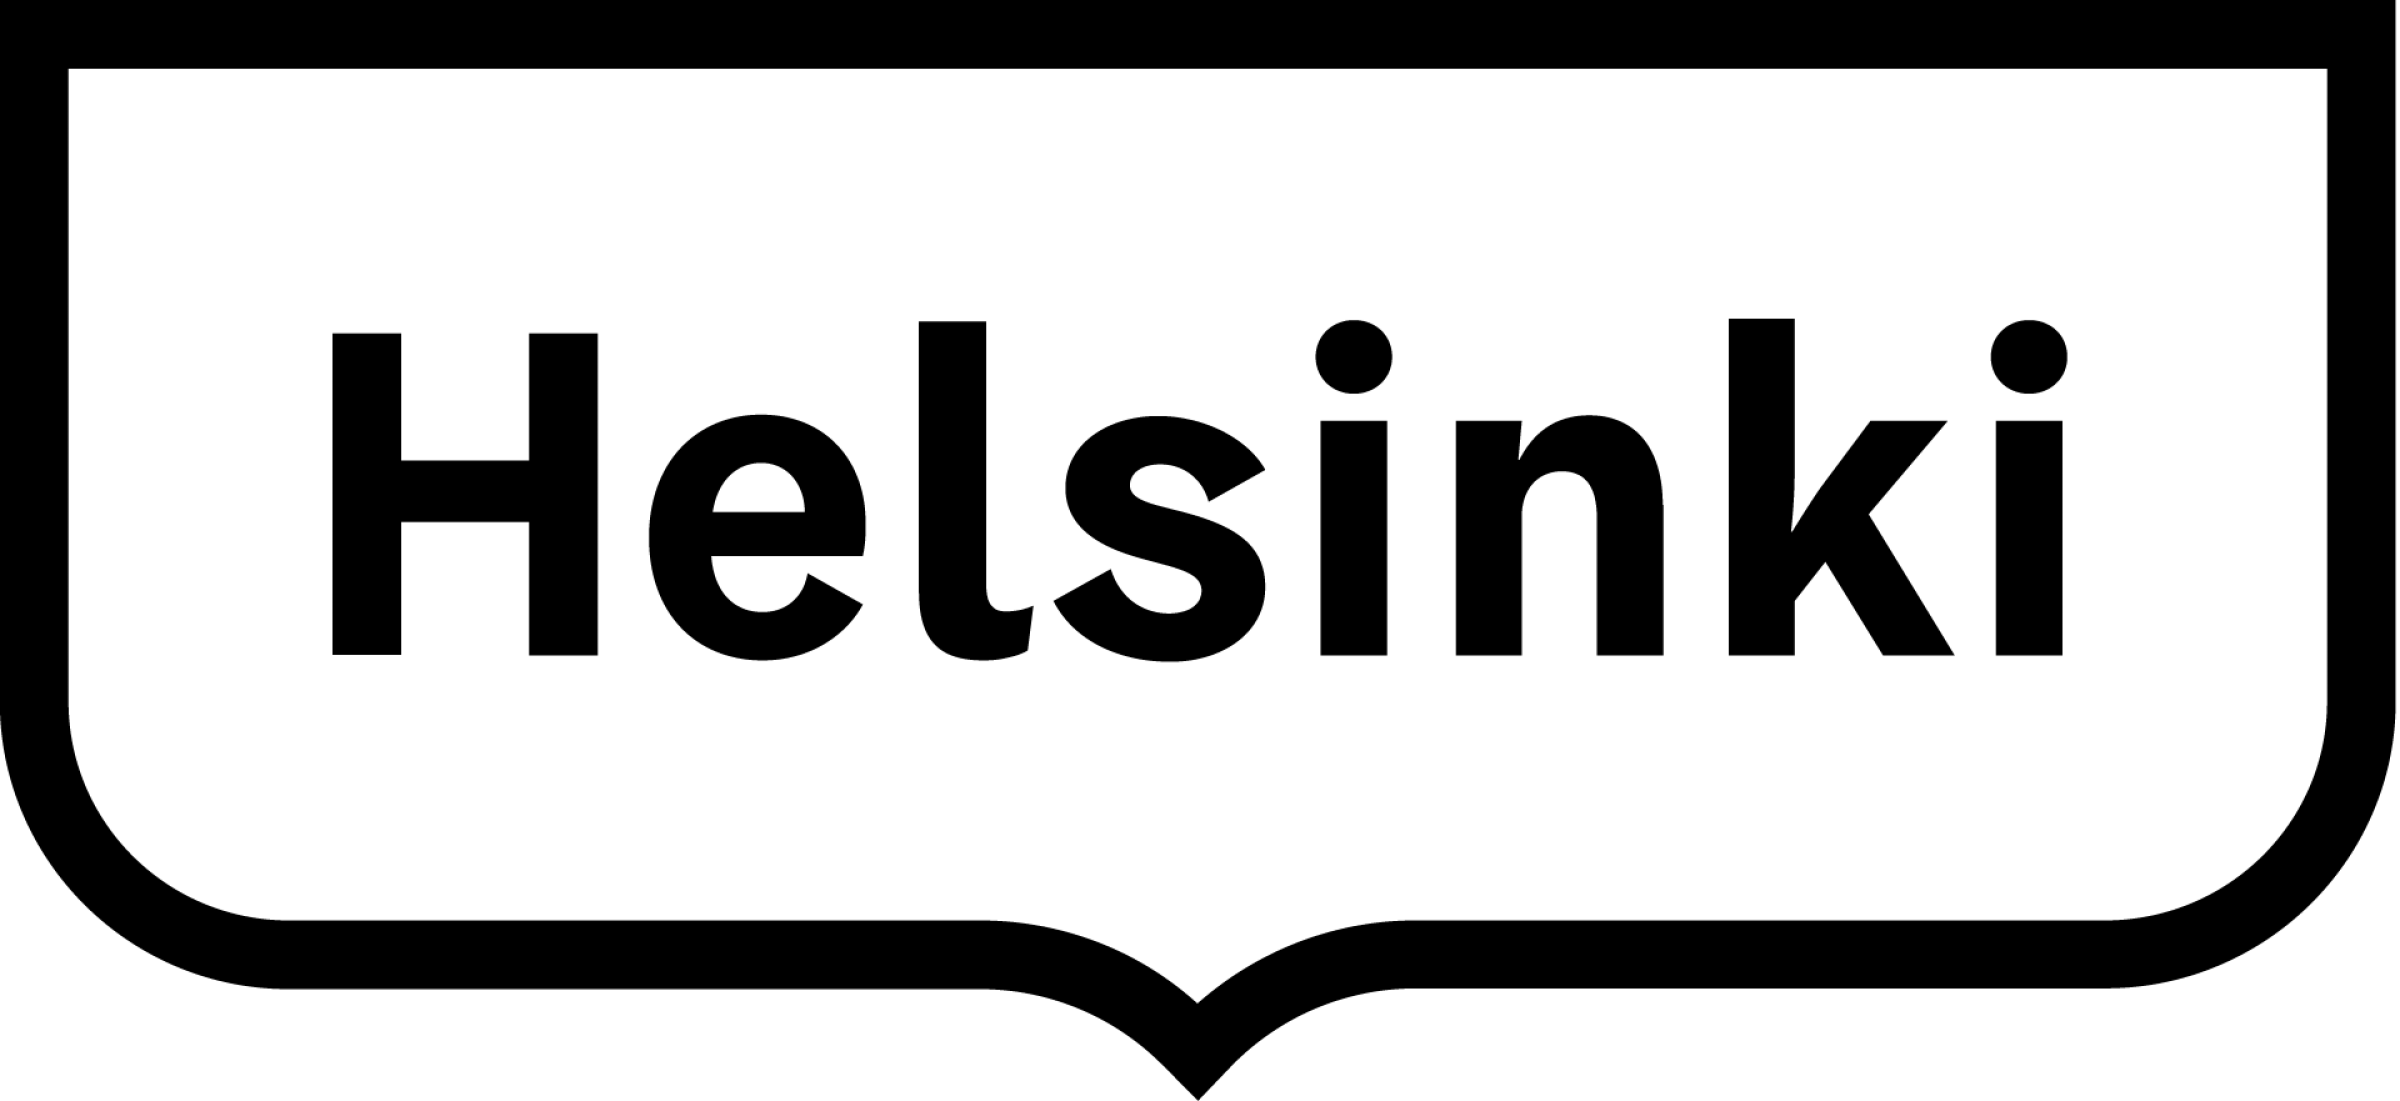 Helsinki kehystunnus 1